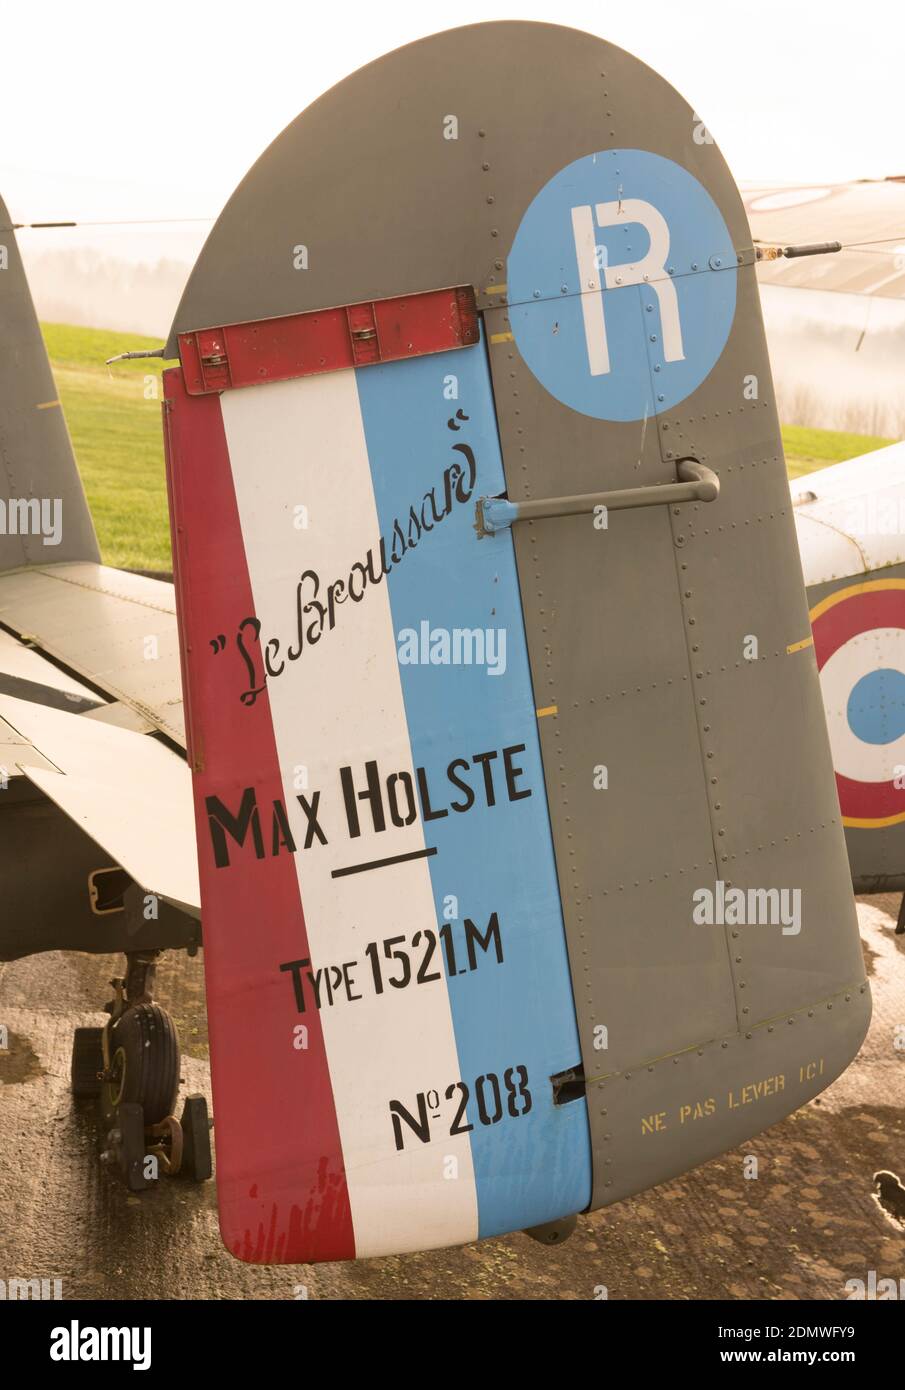 Max. Holste MH. 1521 Broussard französisches 6-Sitz-Utility-Flugzeug auf dem Eggesford Airfield in Rural Devon, England, Großbritannien Stockfoto